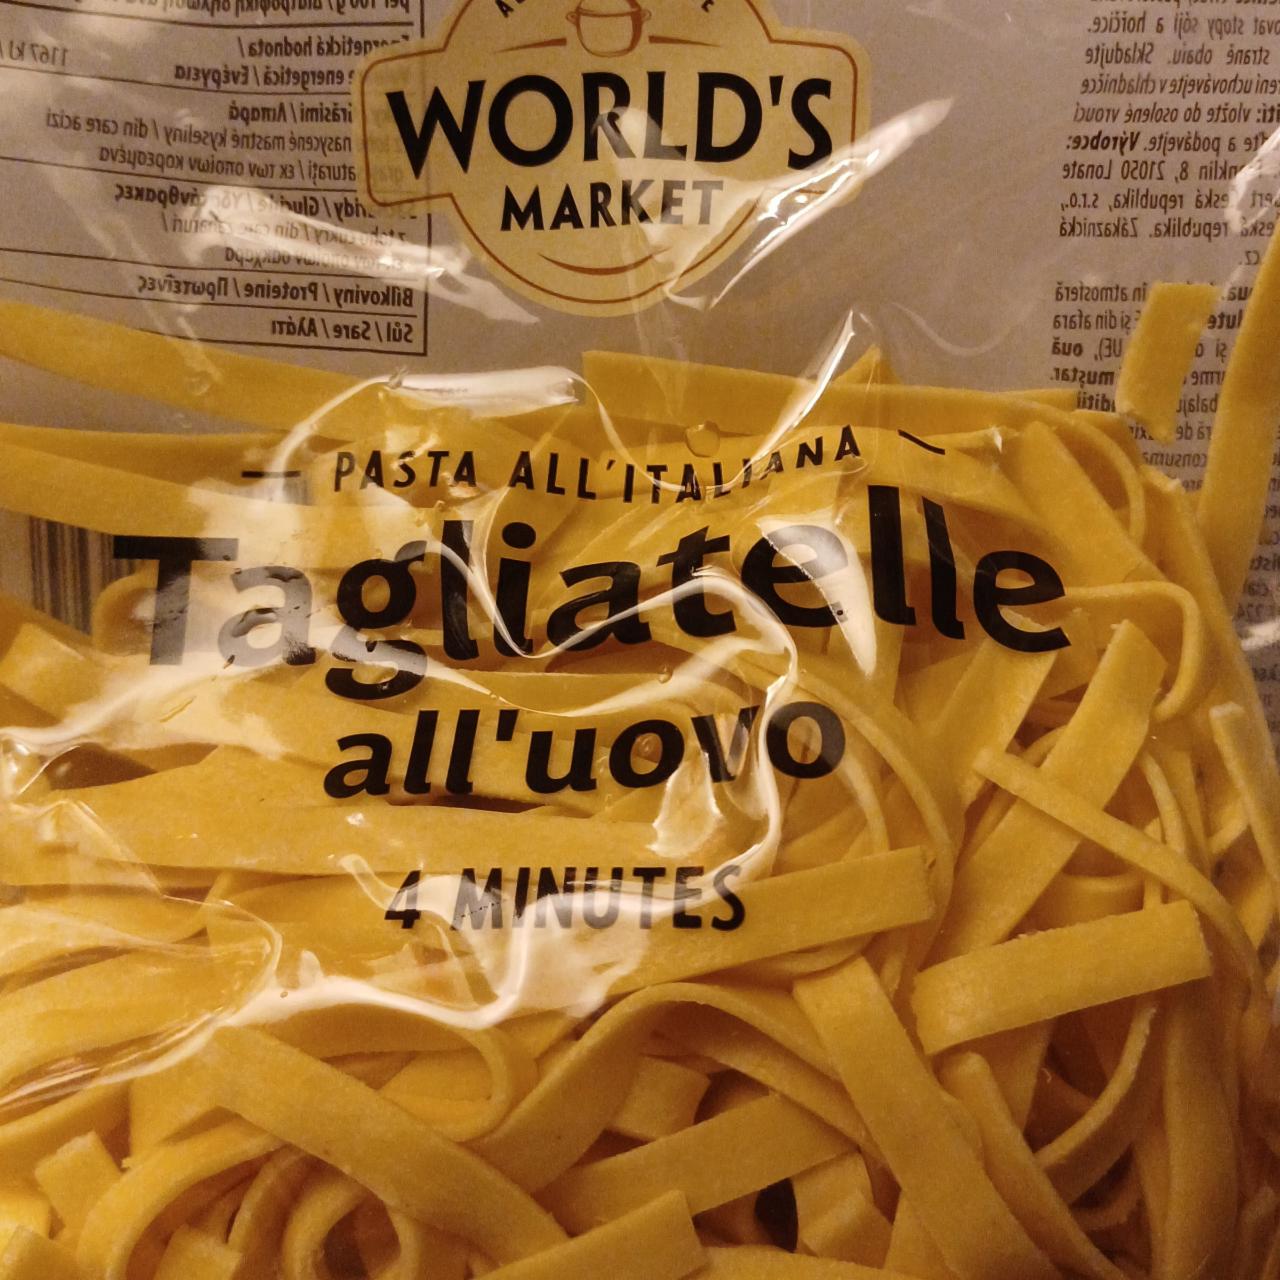 Fotografie - Tagliatelle all'uovo World's market